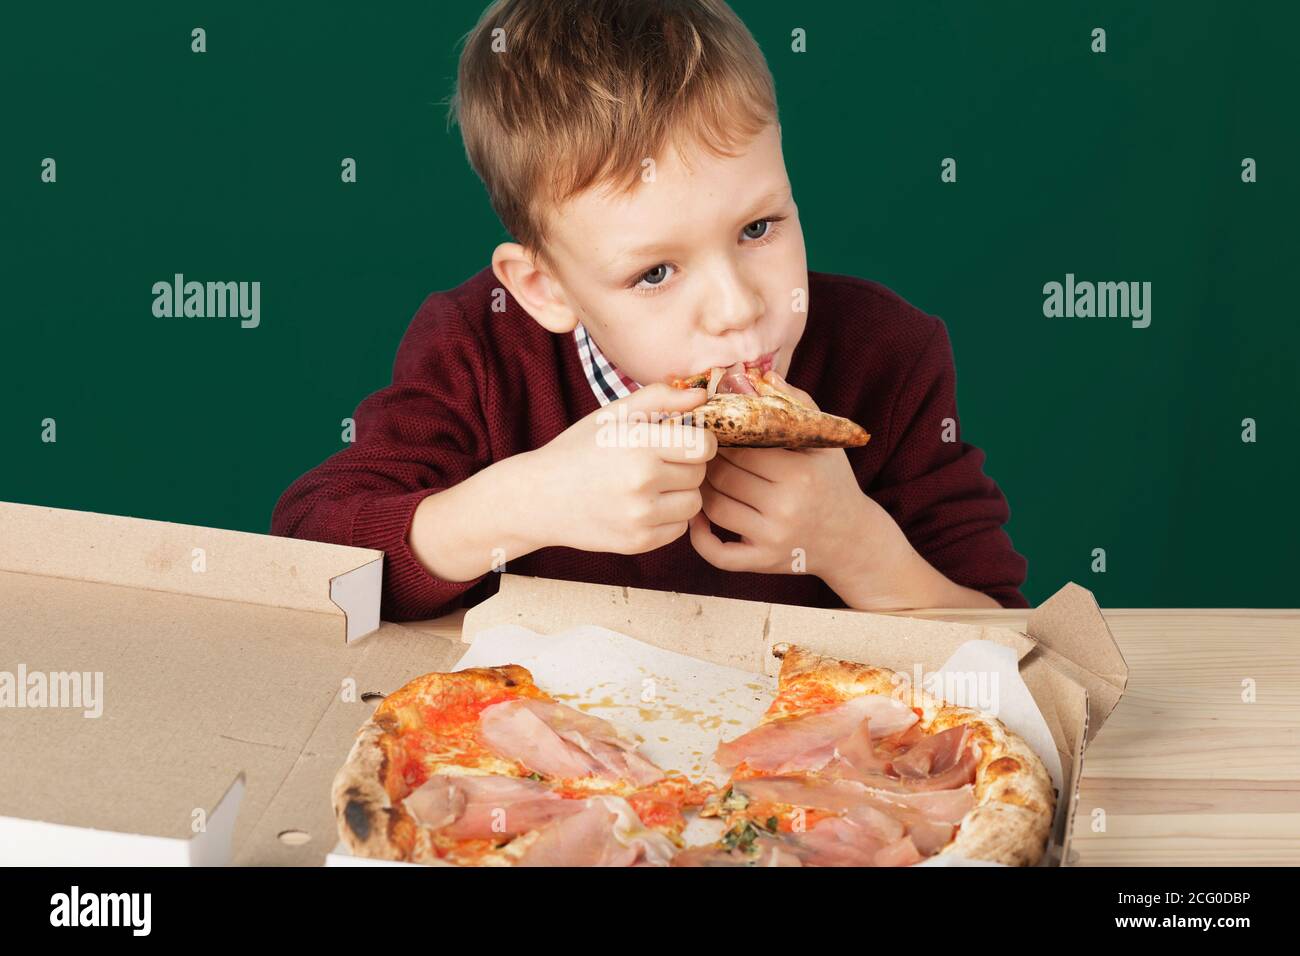 Les enfants mangent de la pizza italienne au café. Le garçon de l'école mange de la pizza pour le déjeuner. Concept de repas malsain pour enfant. Enfants affamés. Recette de pizza. Enfant mangeant pizz Banque D'Images